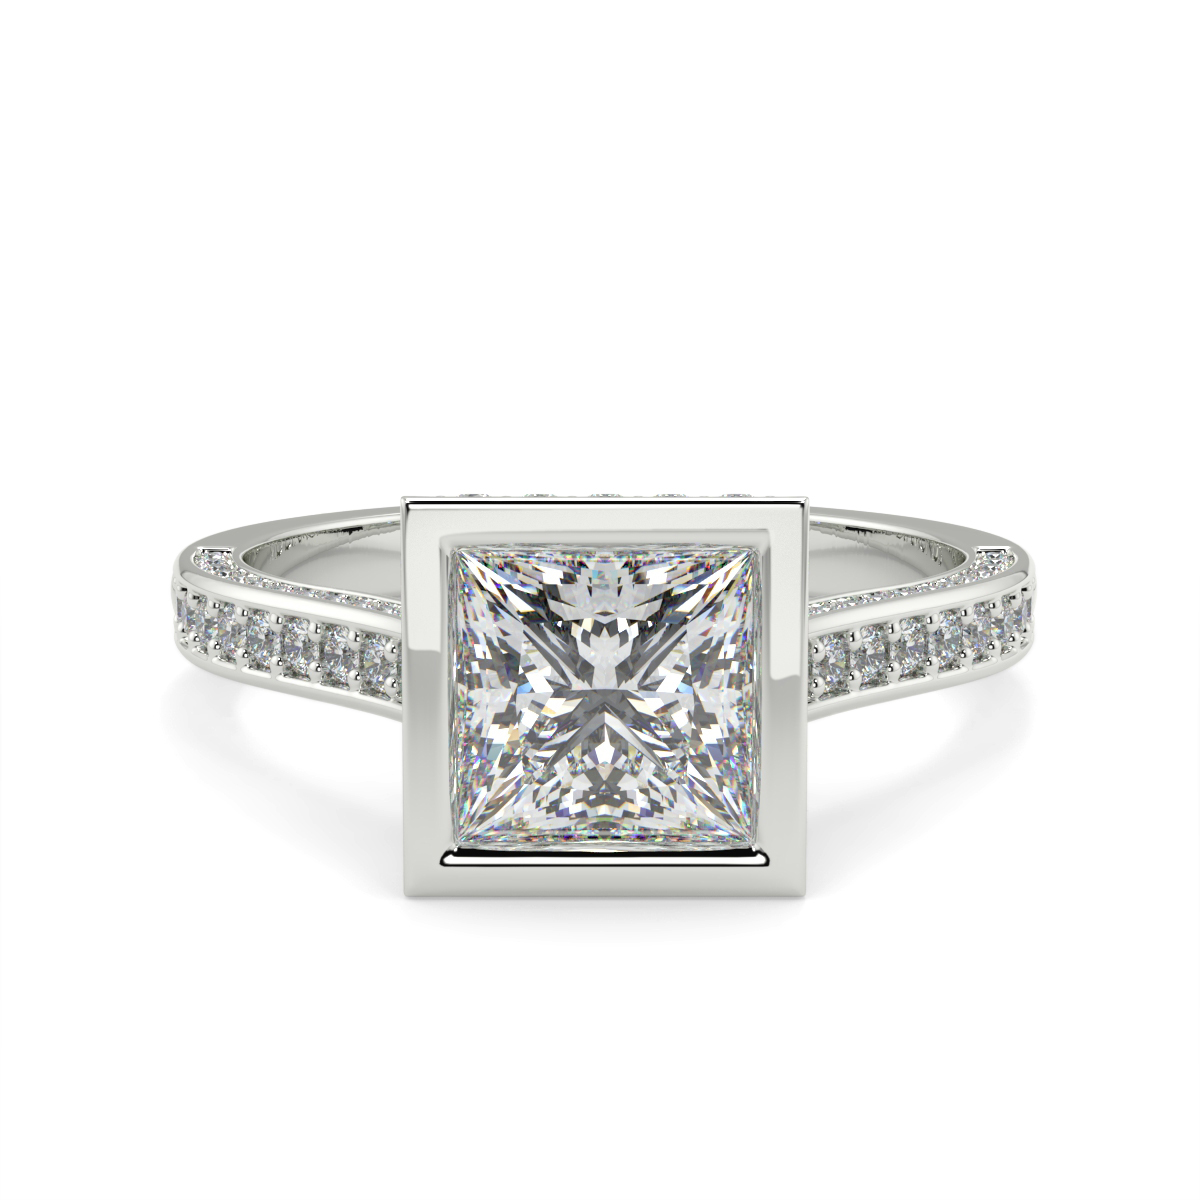 Princess Pave Set Rubover Diamond Ring